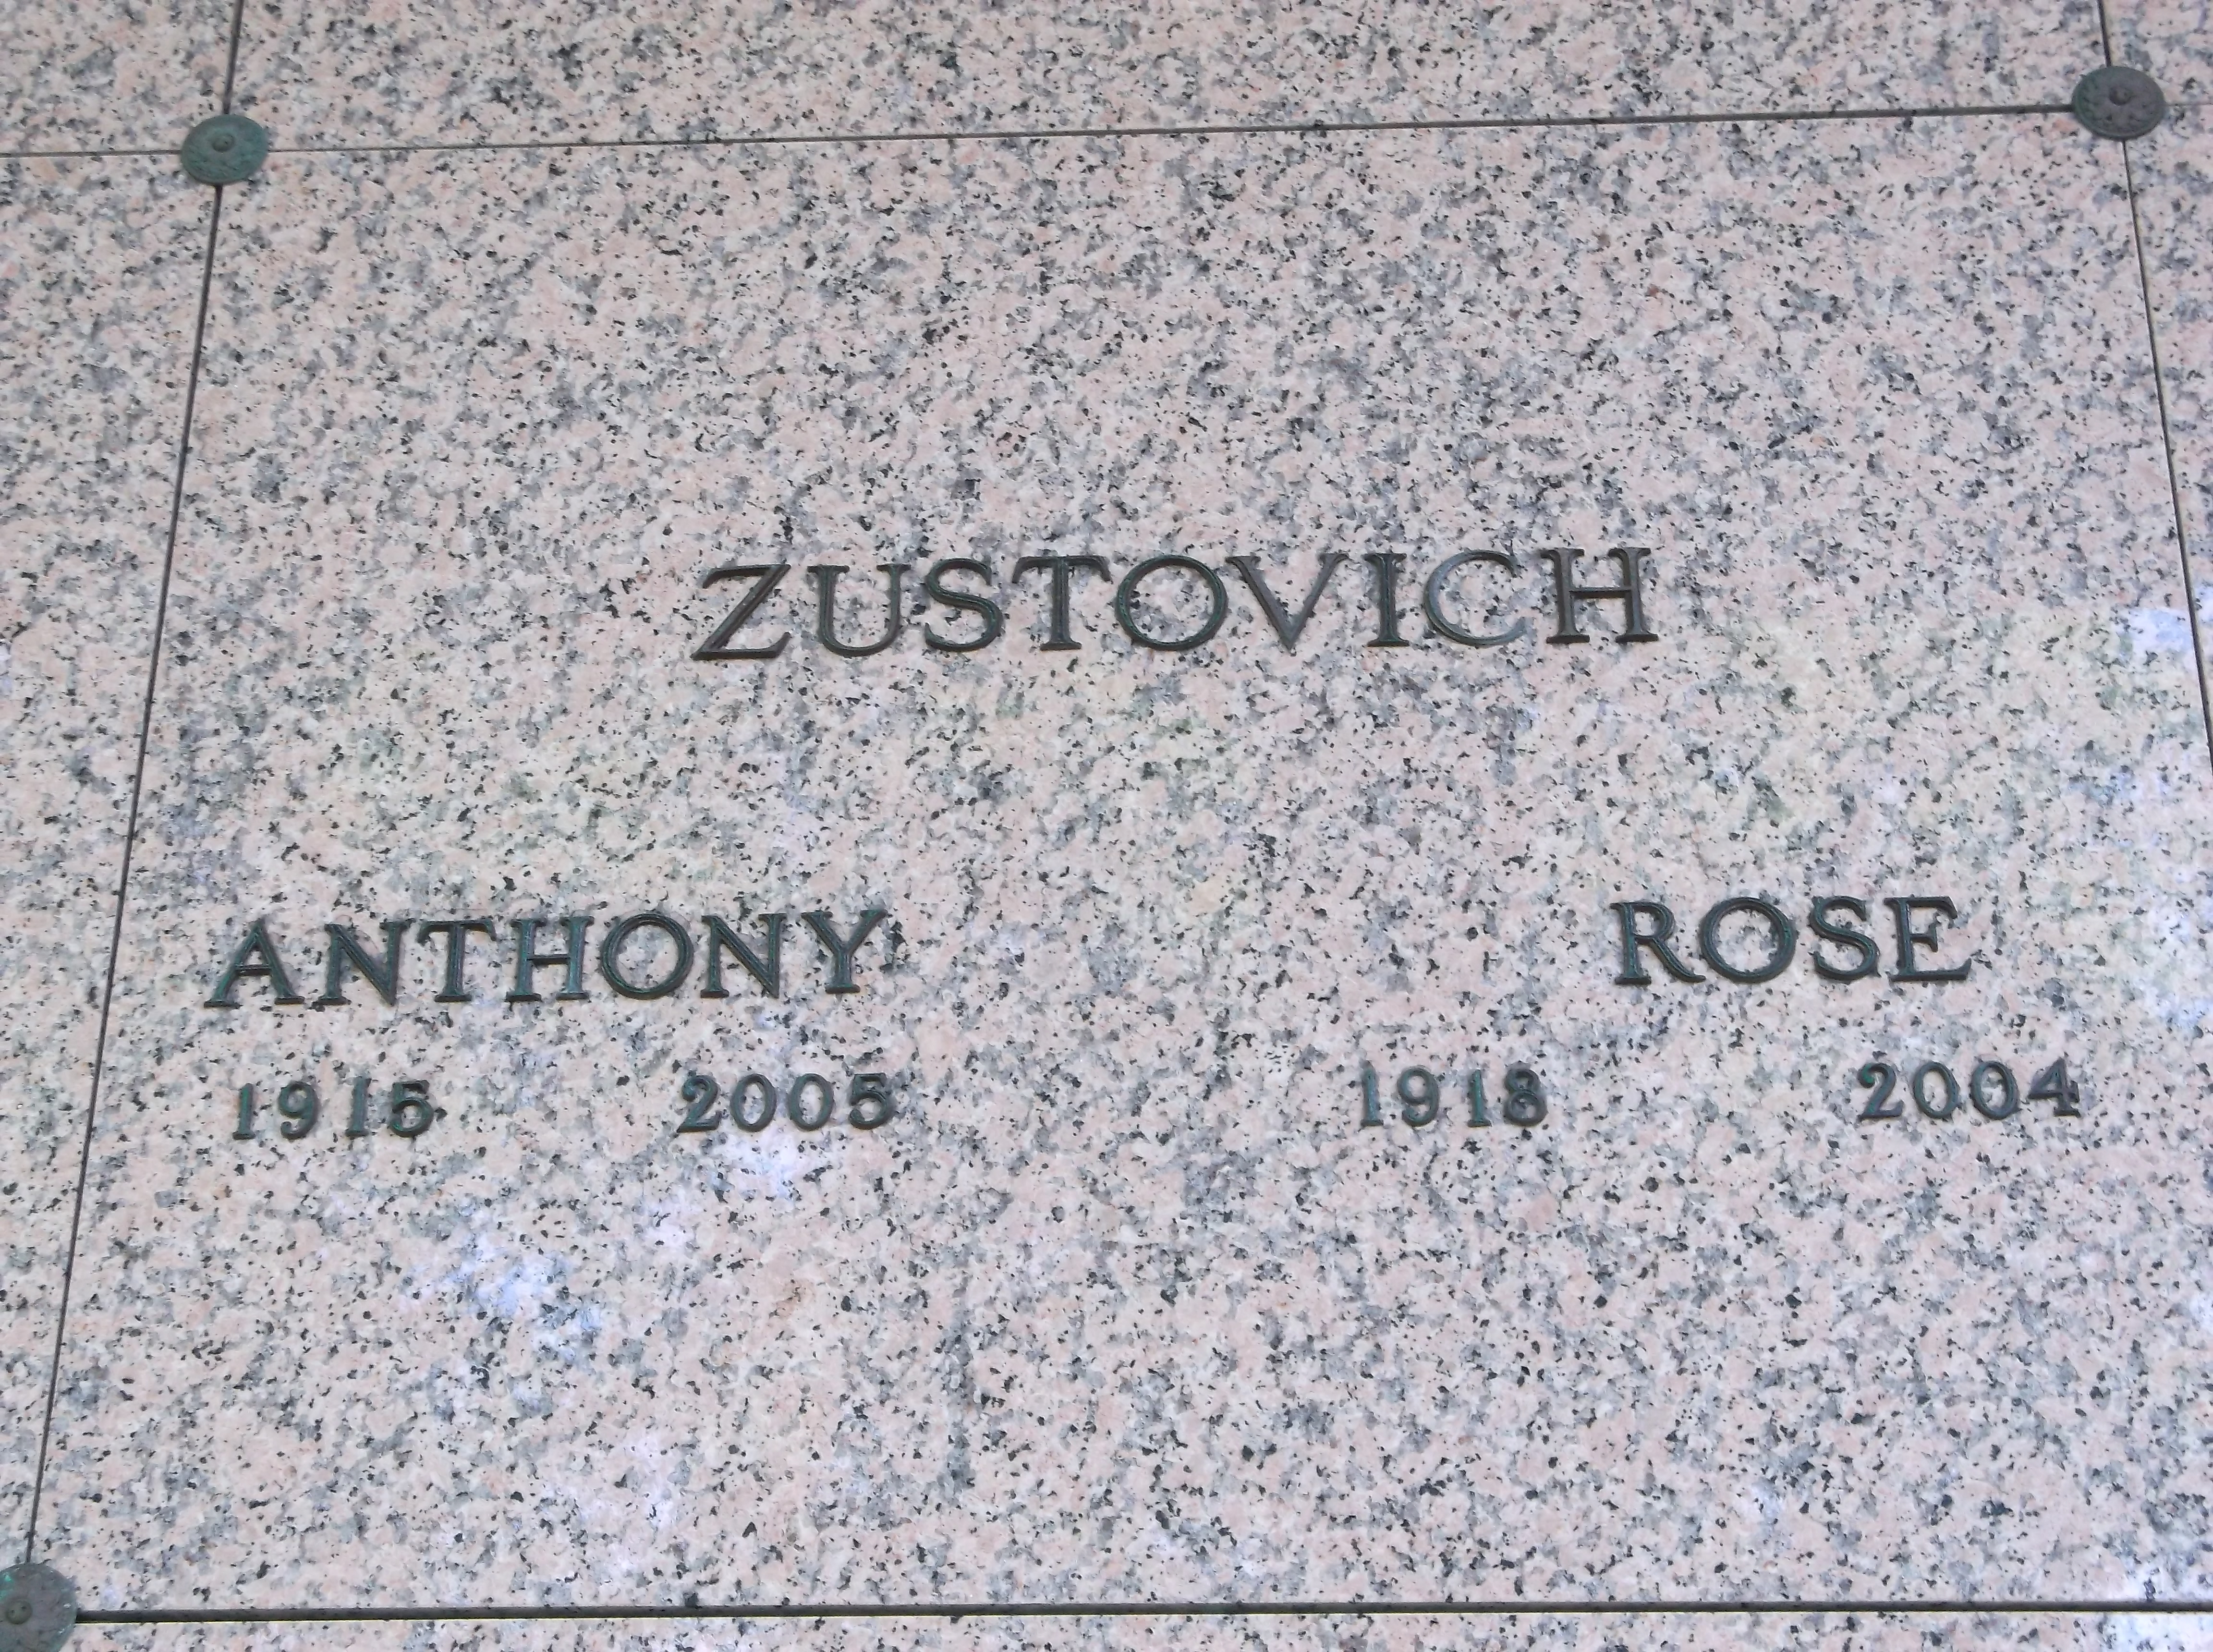 Anthony Zustovich